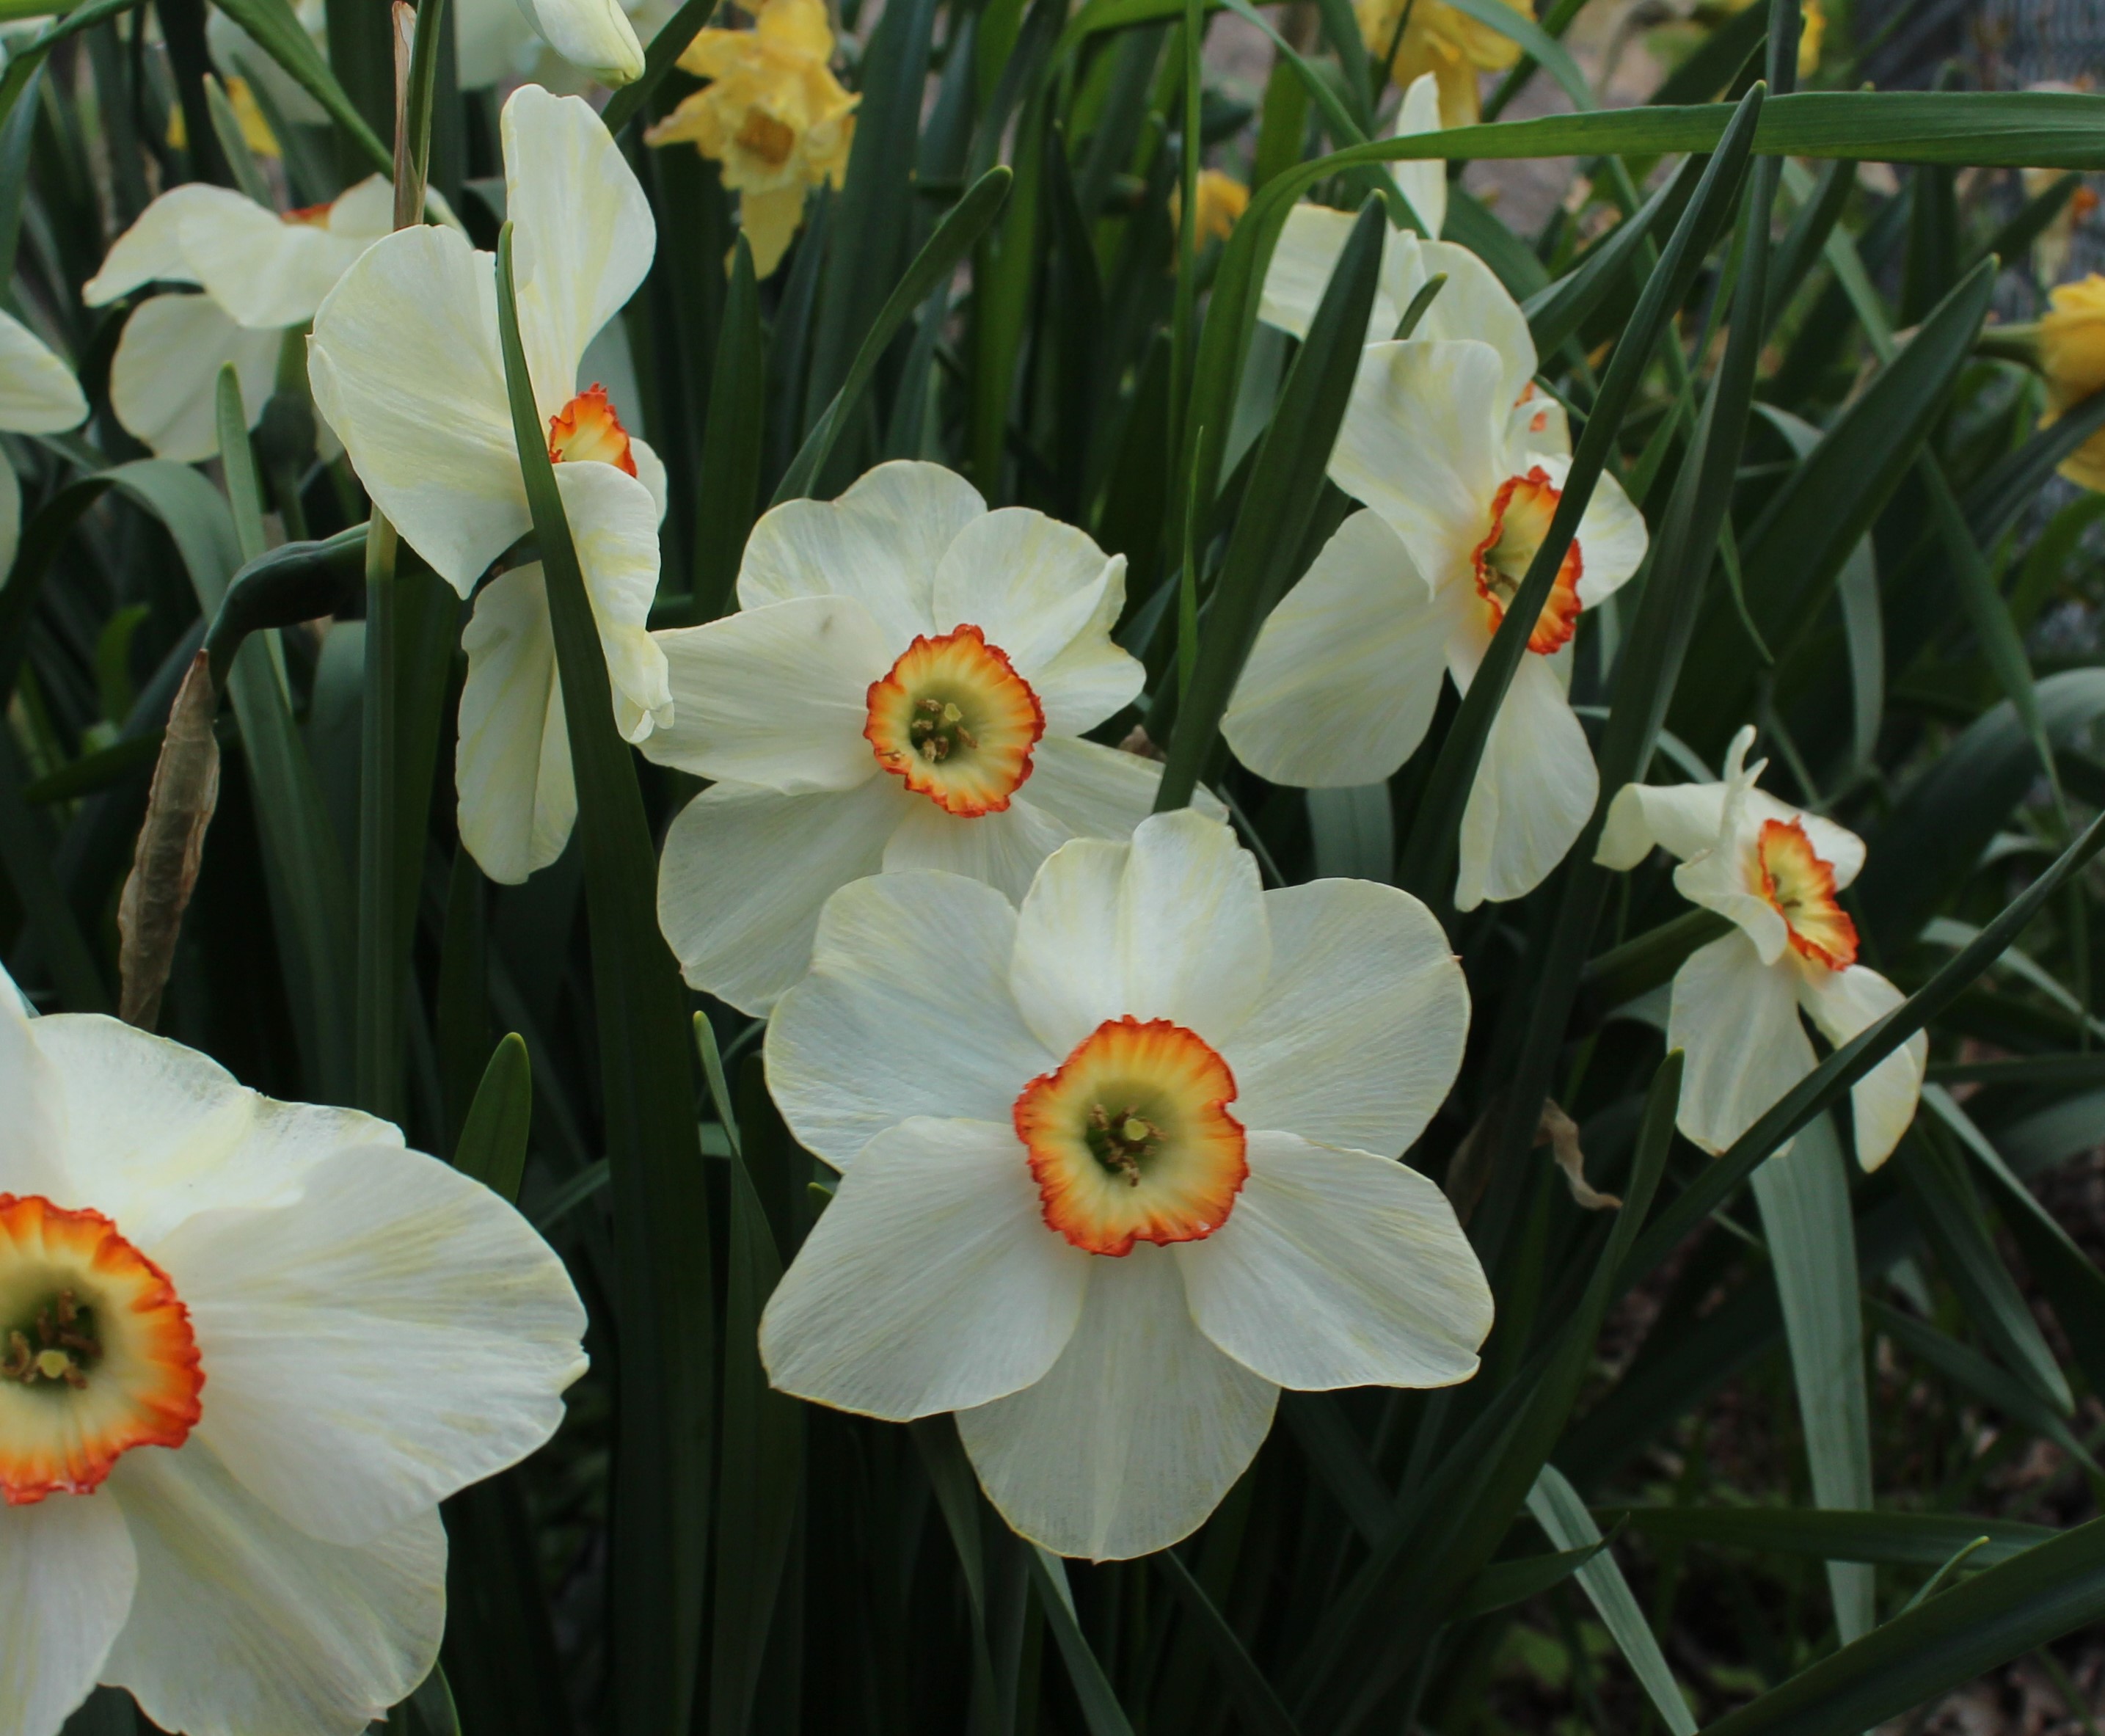 daffodils « sorta like suburbia